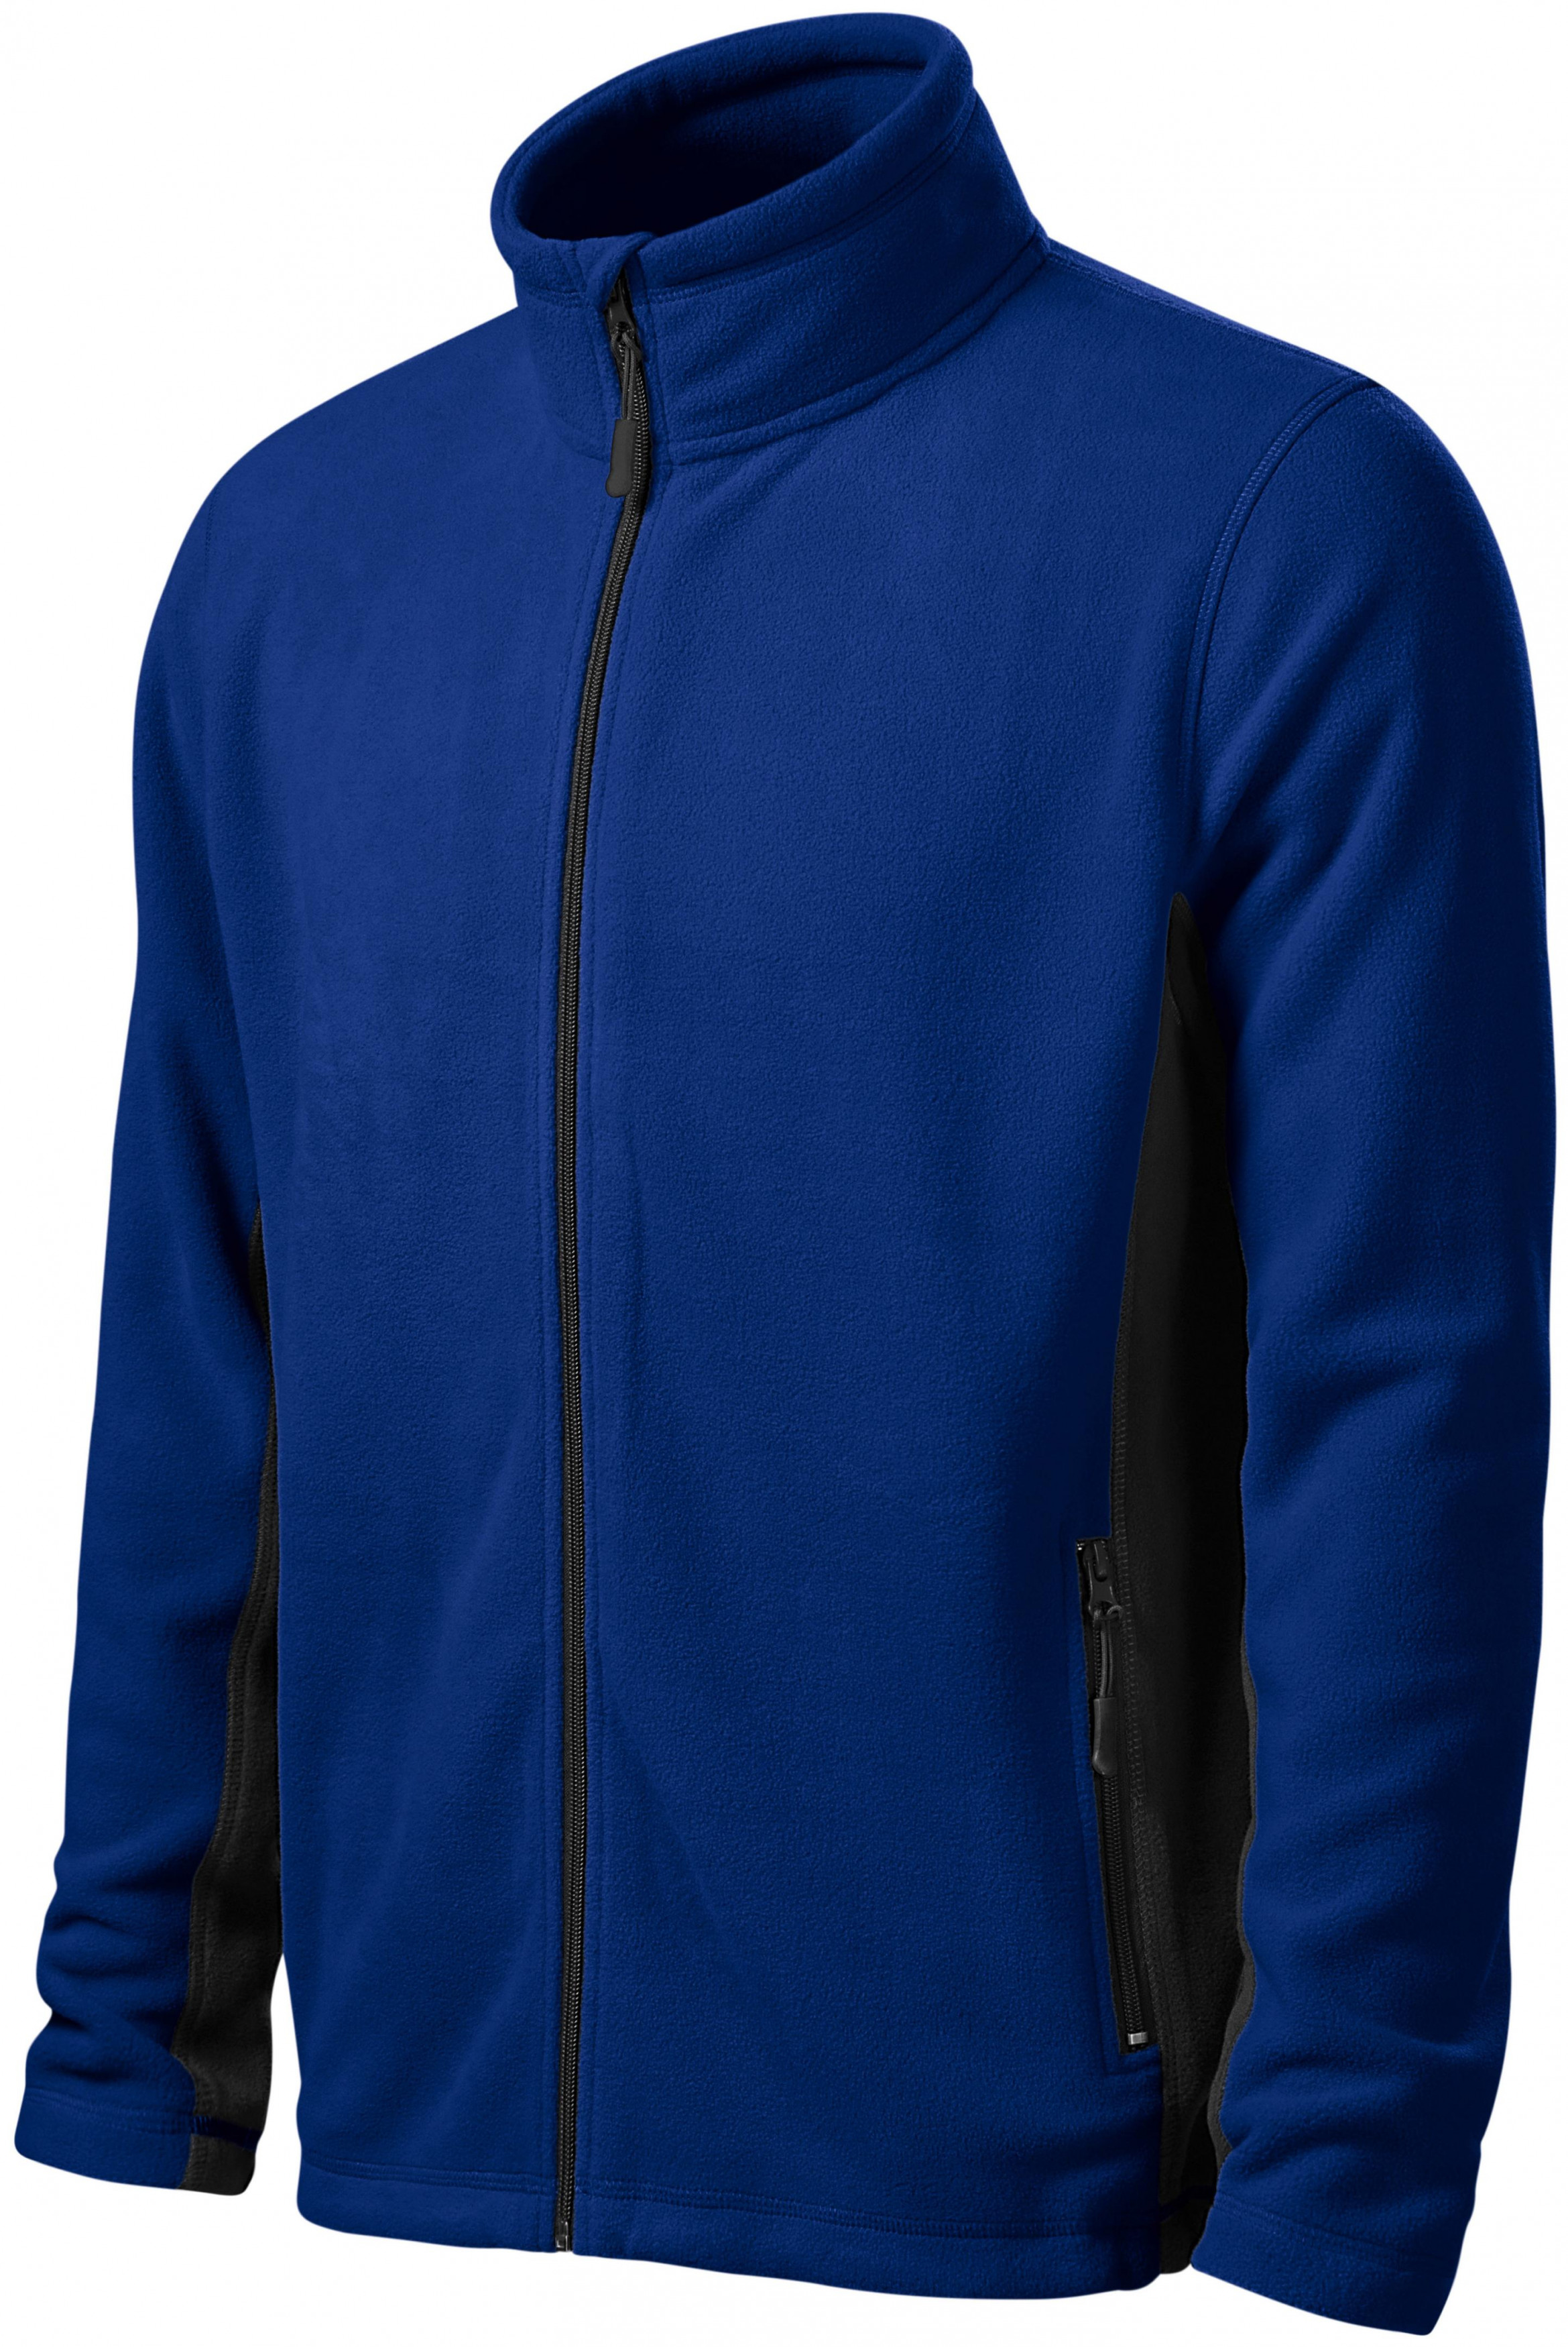 Pánska fleecová bunda kontrastná, kráľovská modrá, XL